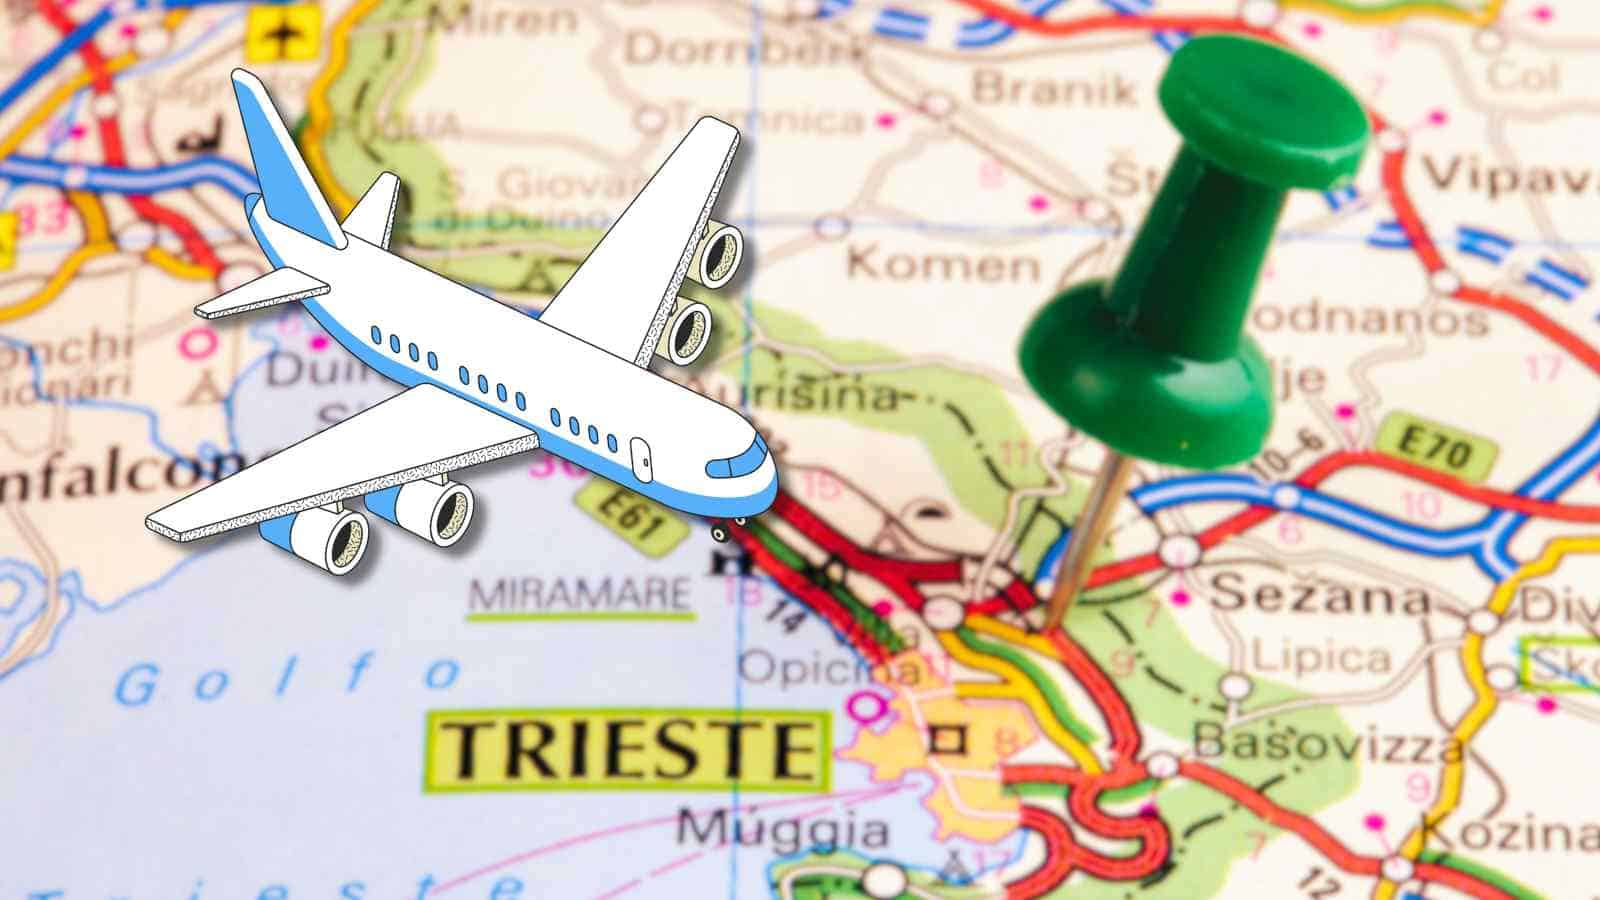 Trieste Airport è l'esempio virtuoso da seguire per intraprendere il percorso dell'energia sostenibile anche negli spazi più operosi.